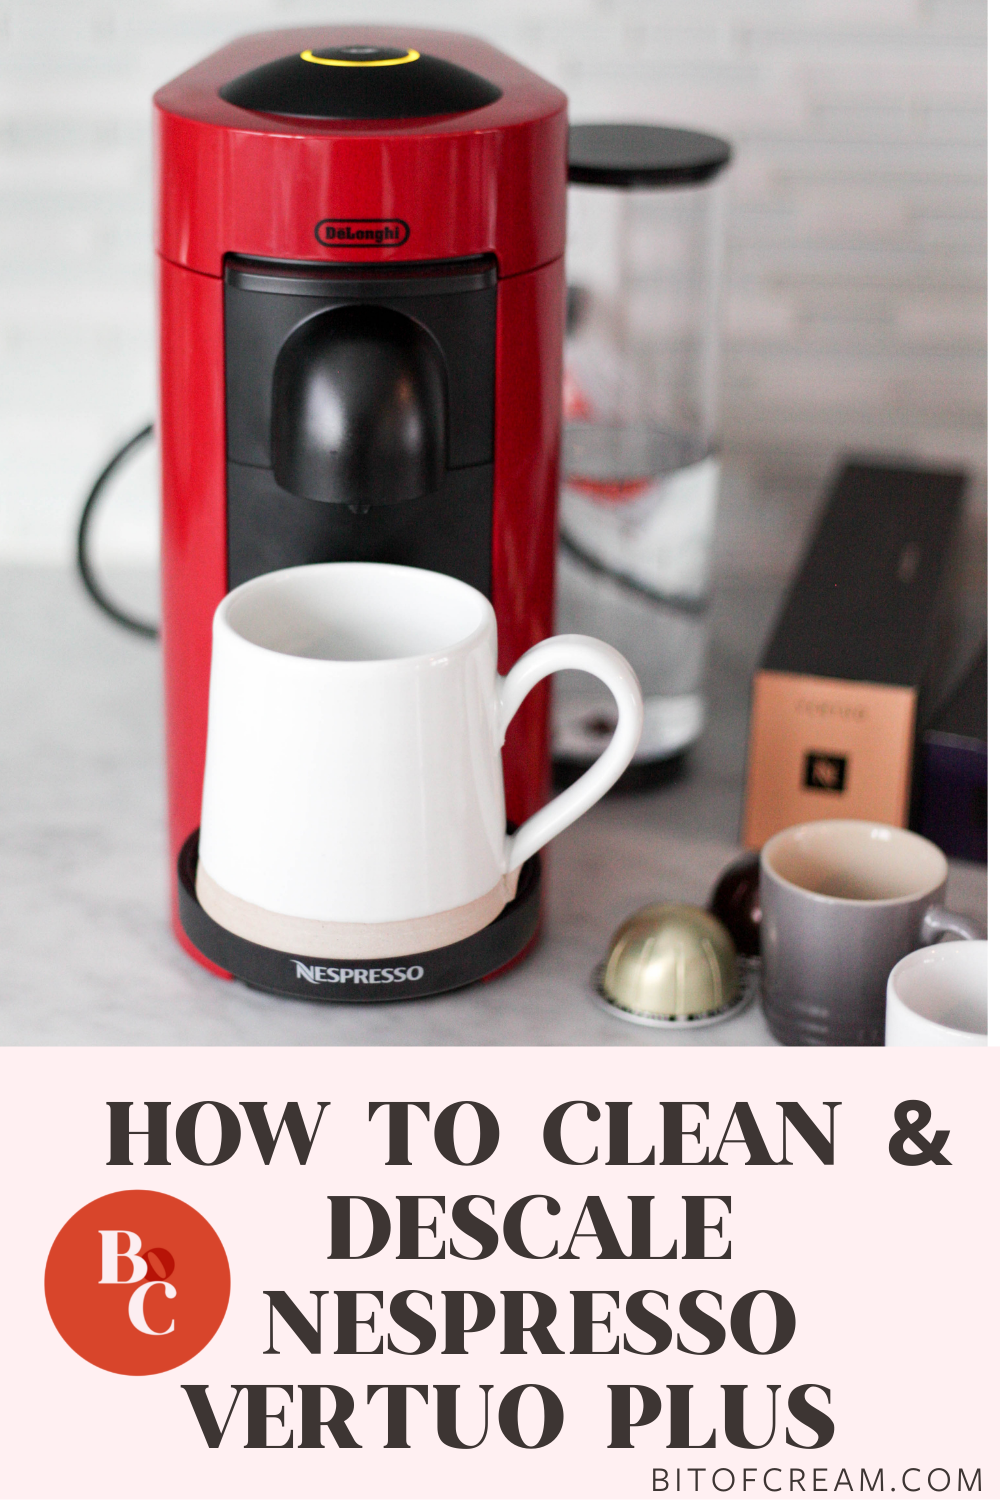 Svig eventyr grus How to Clean & Descale A Nespresso Machine - BIT OF CREAM